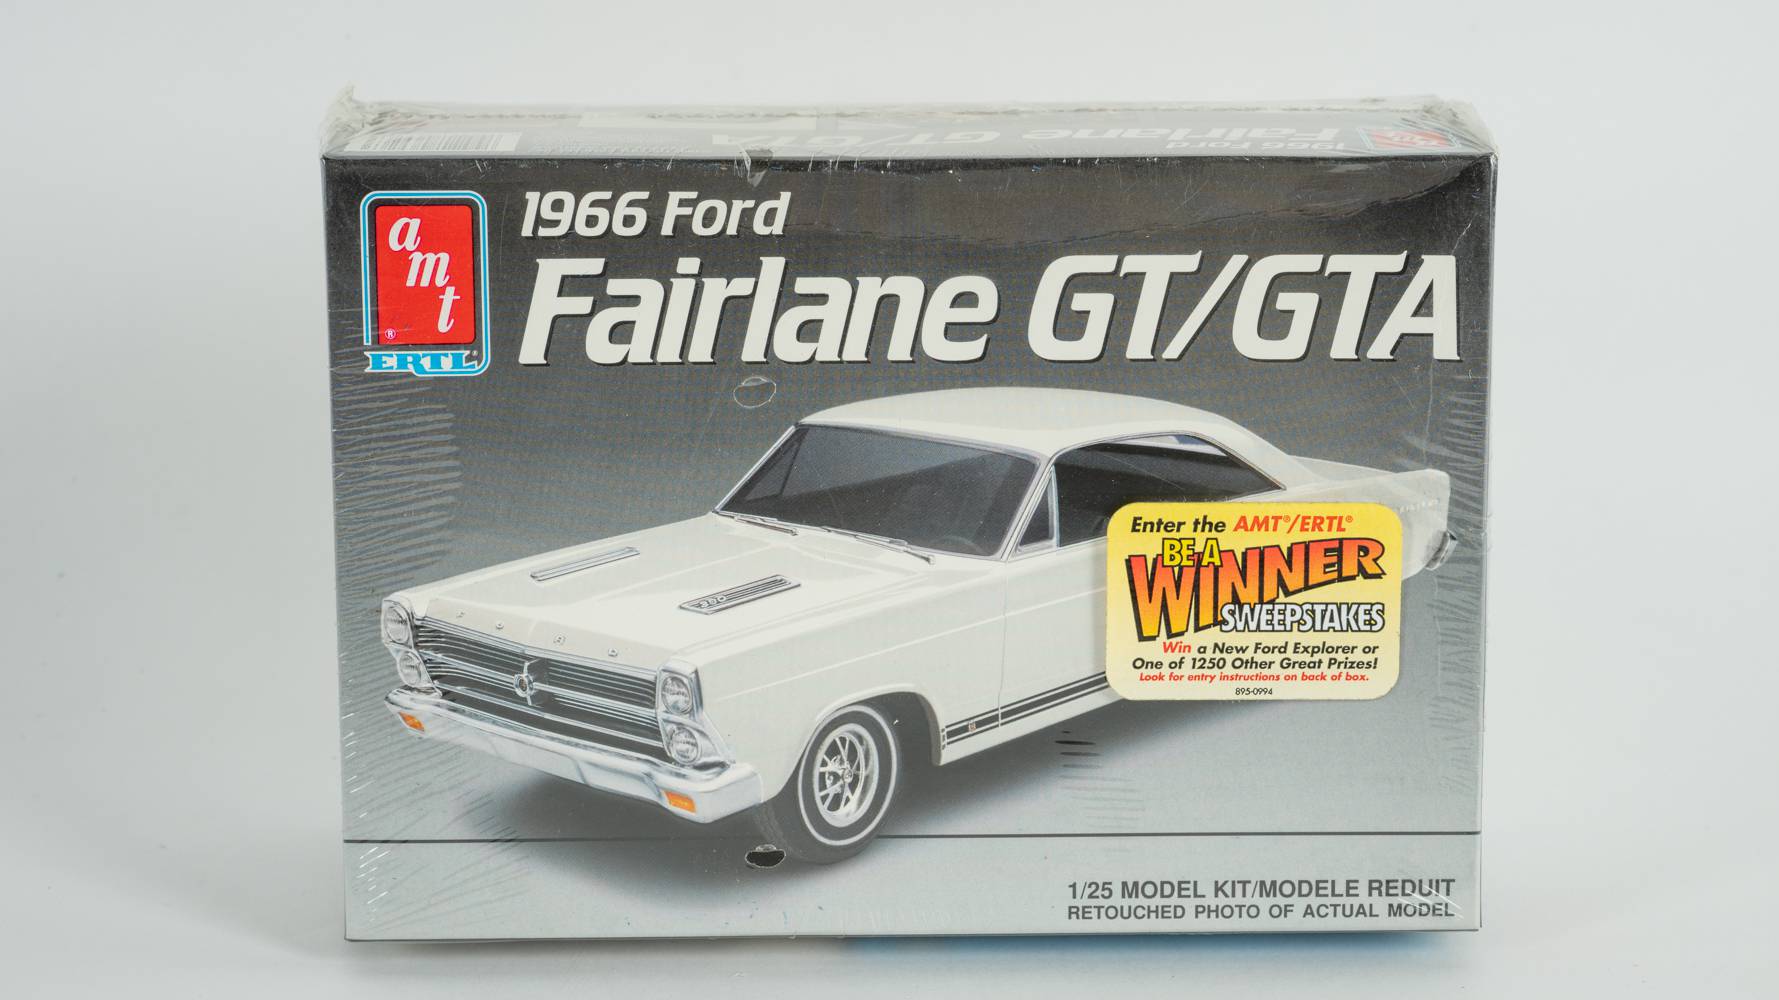 1966 Ford Fairlane GT/GTA Model Kit Auction